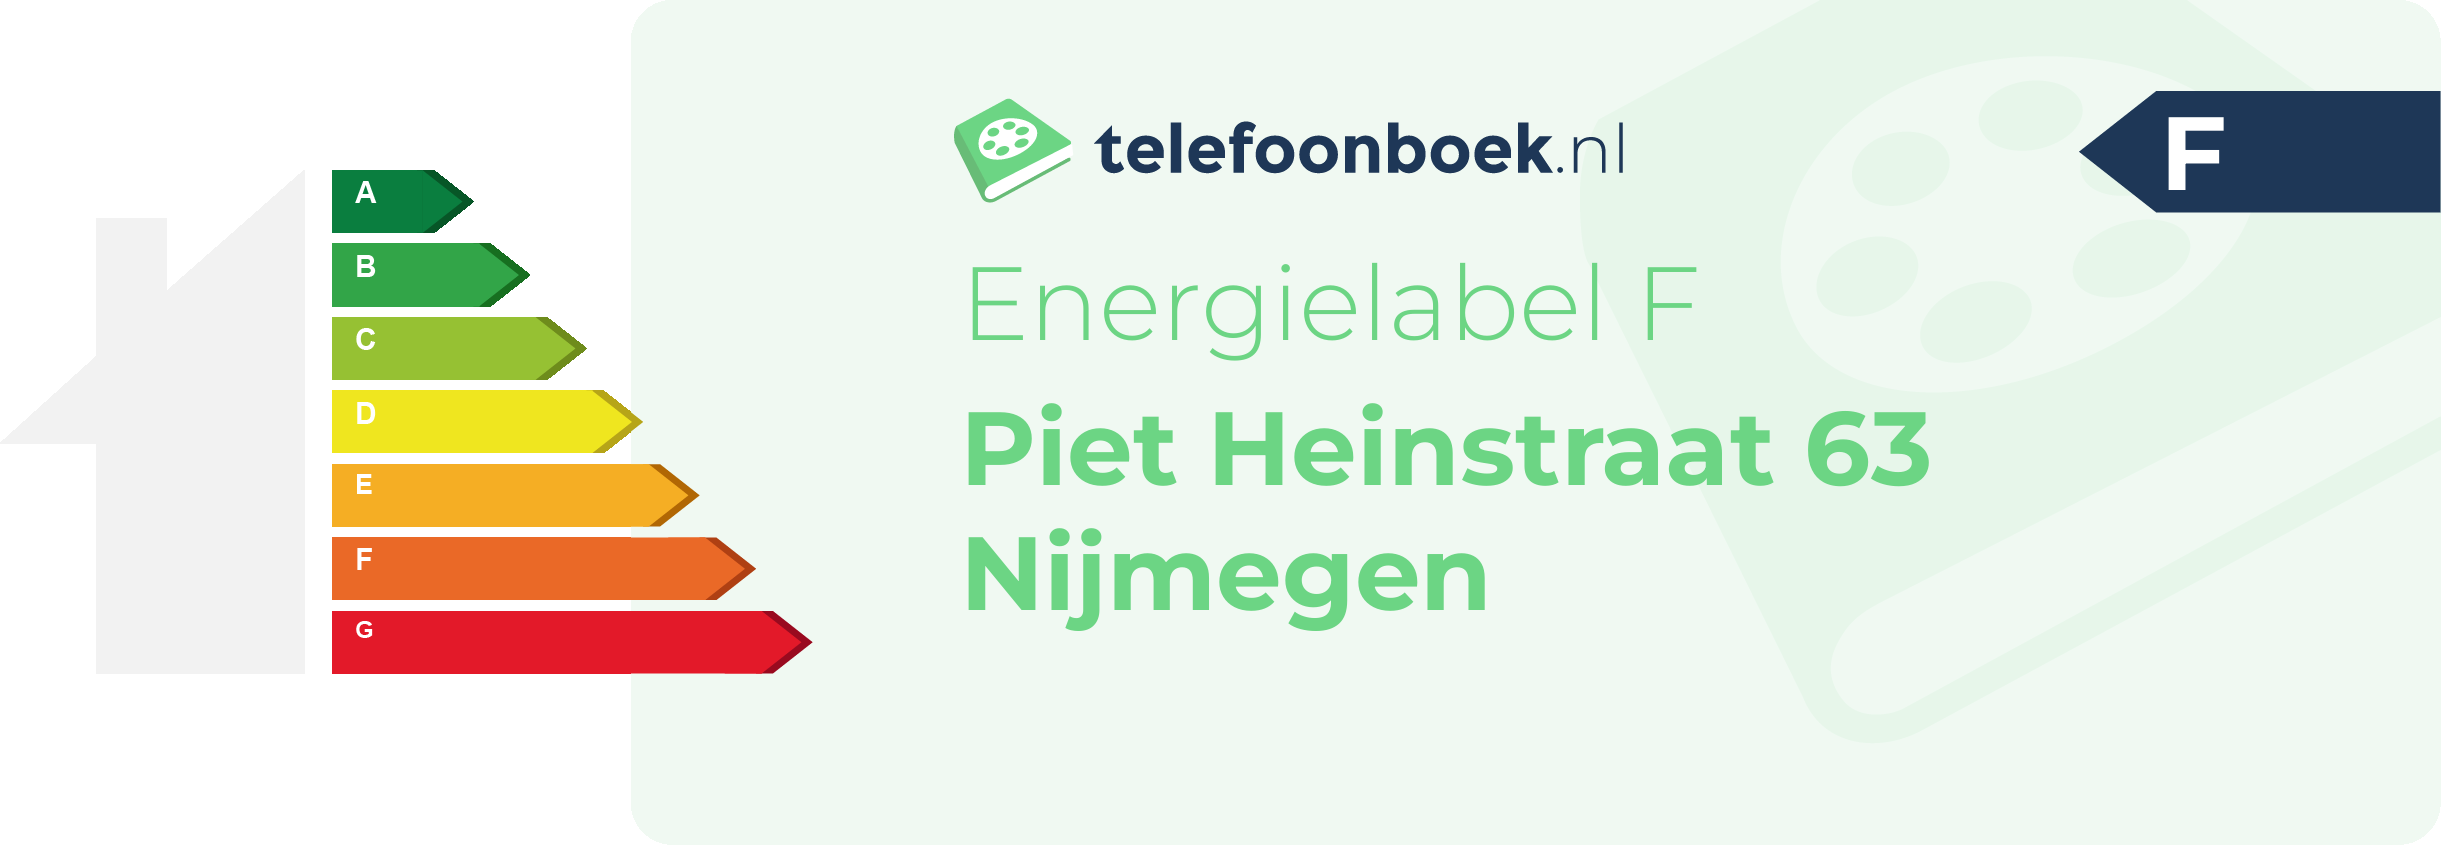 Energielabel Piet Heinstraat 63 Nijmegen